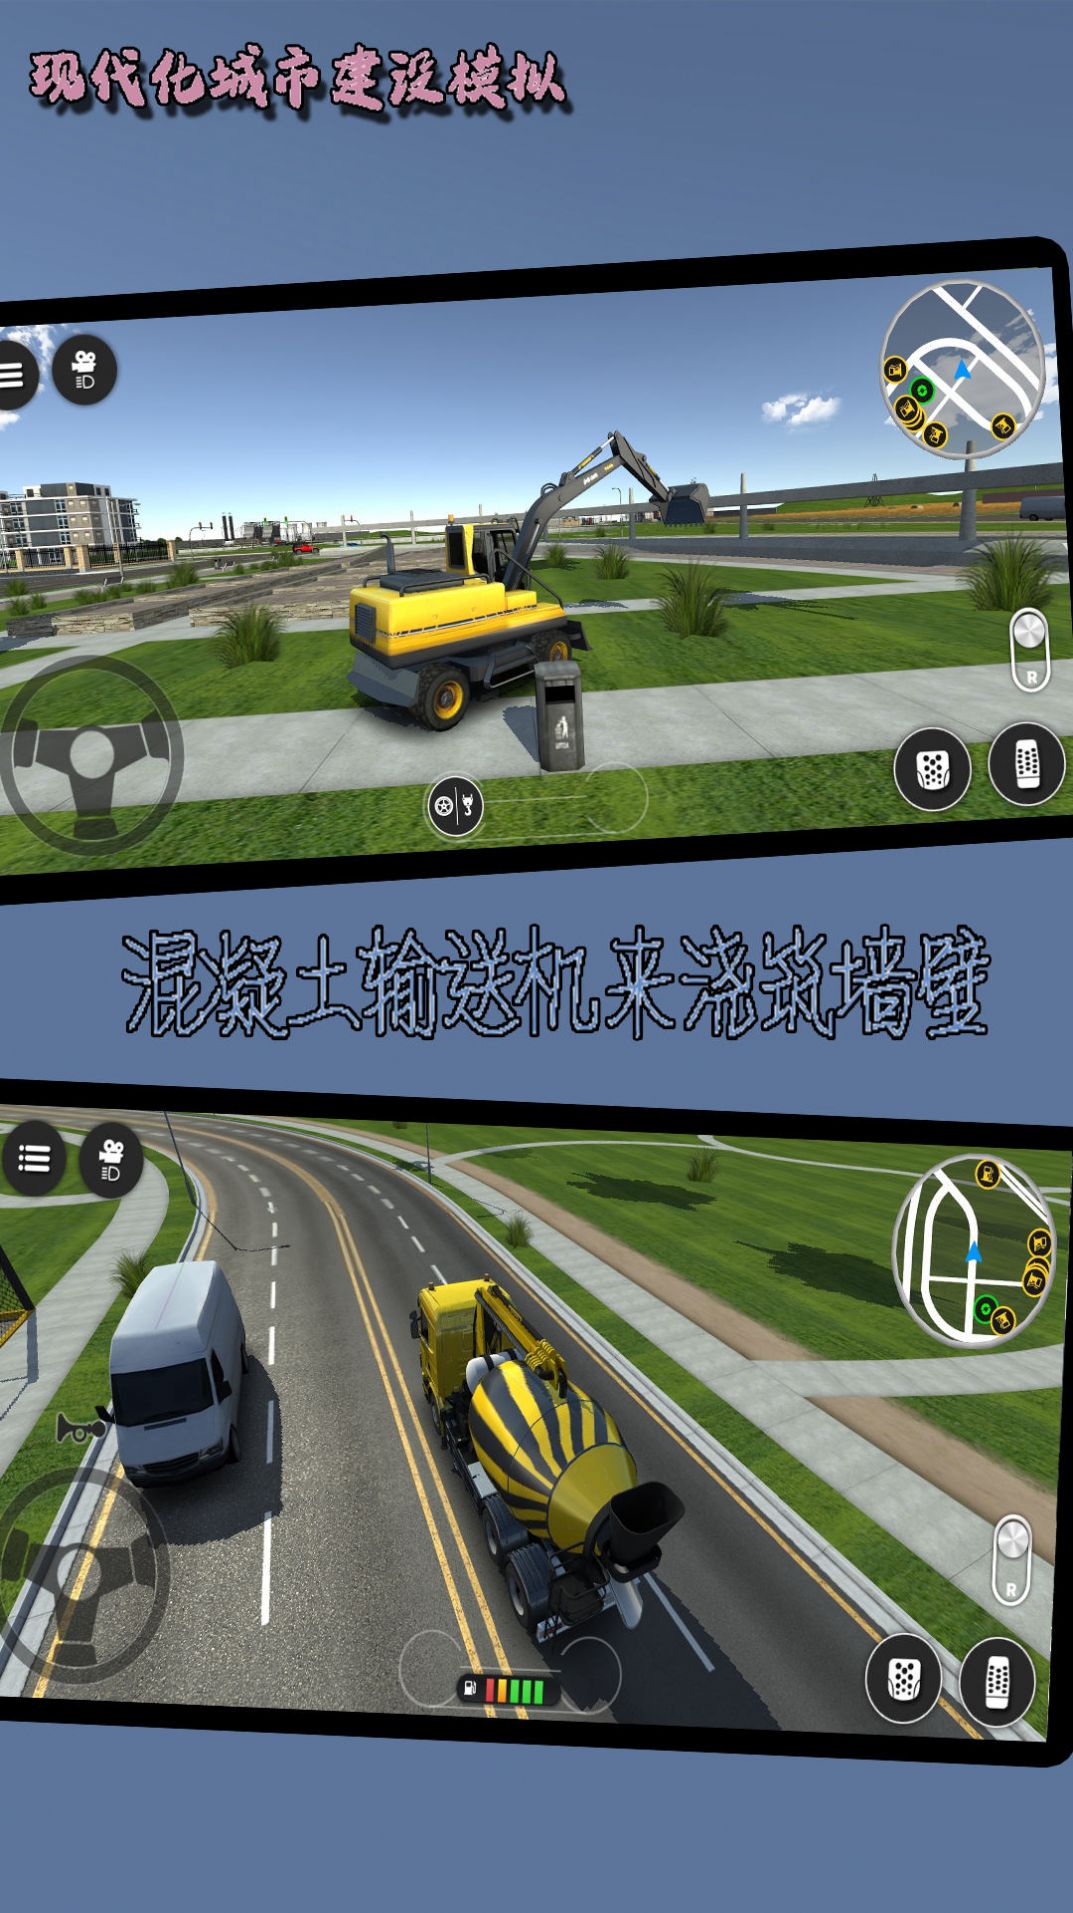 现代化城市建设模拟手游下载 v1021.101.10 安卓版 3